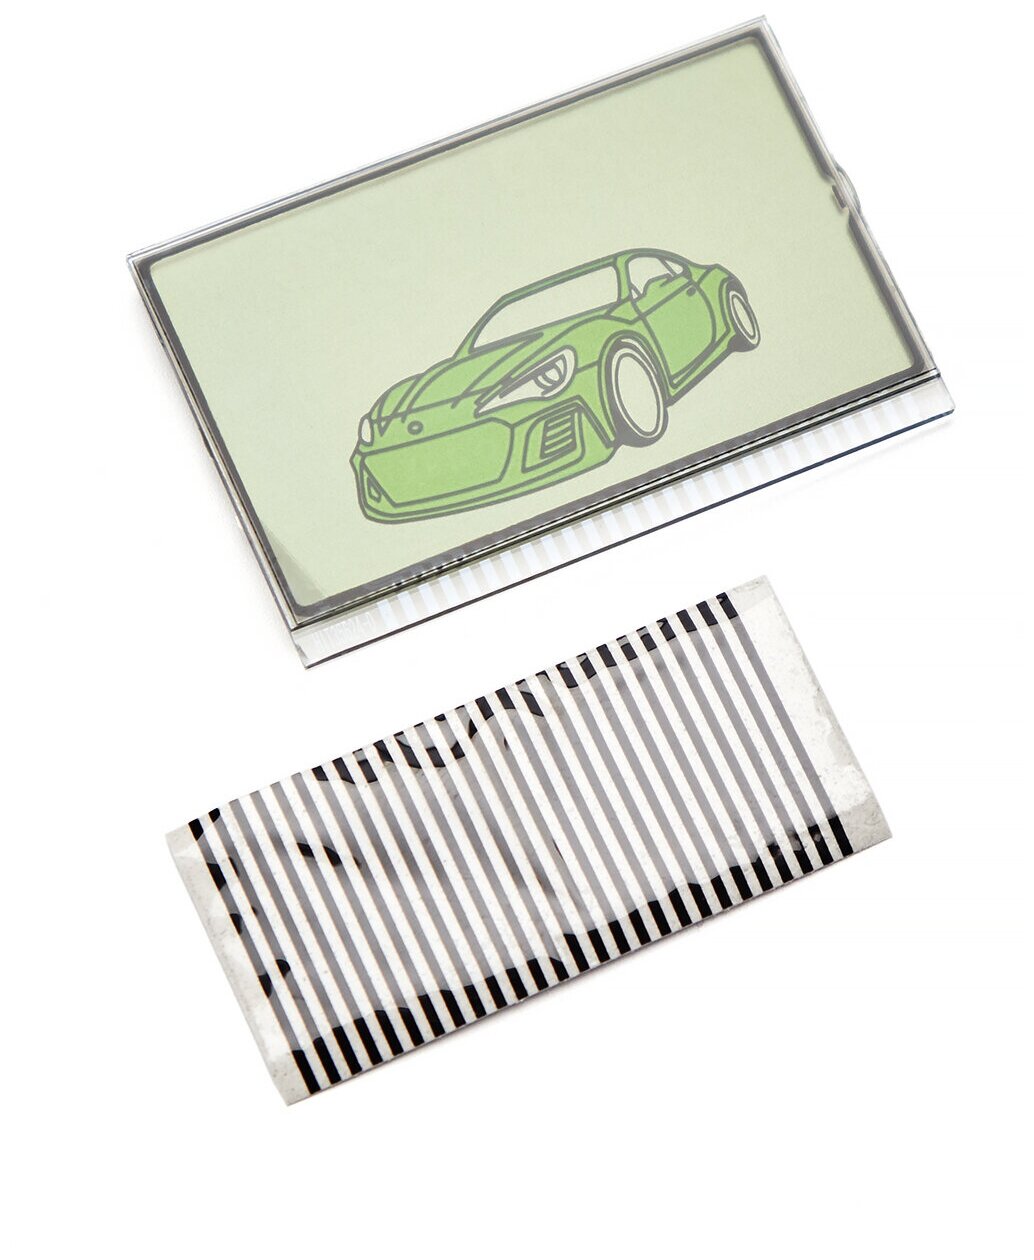 Дисплей LCD на шлейфе подходит для брелока ( пульта ) автосигнализации Scher-Khan Mobicar 1/2